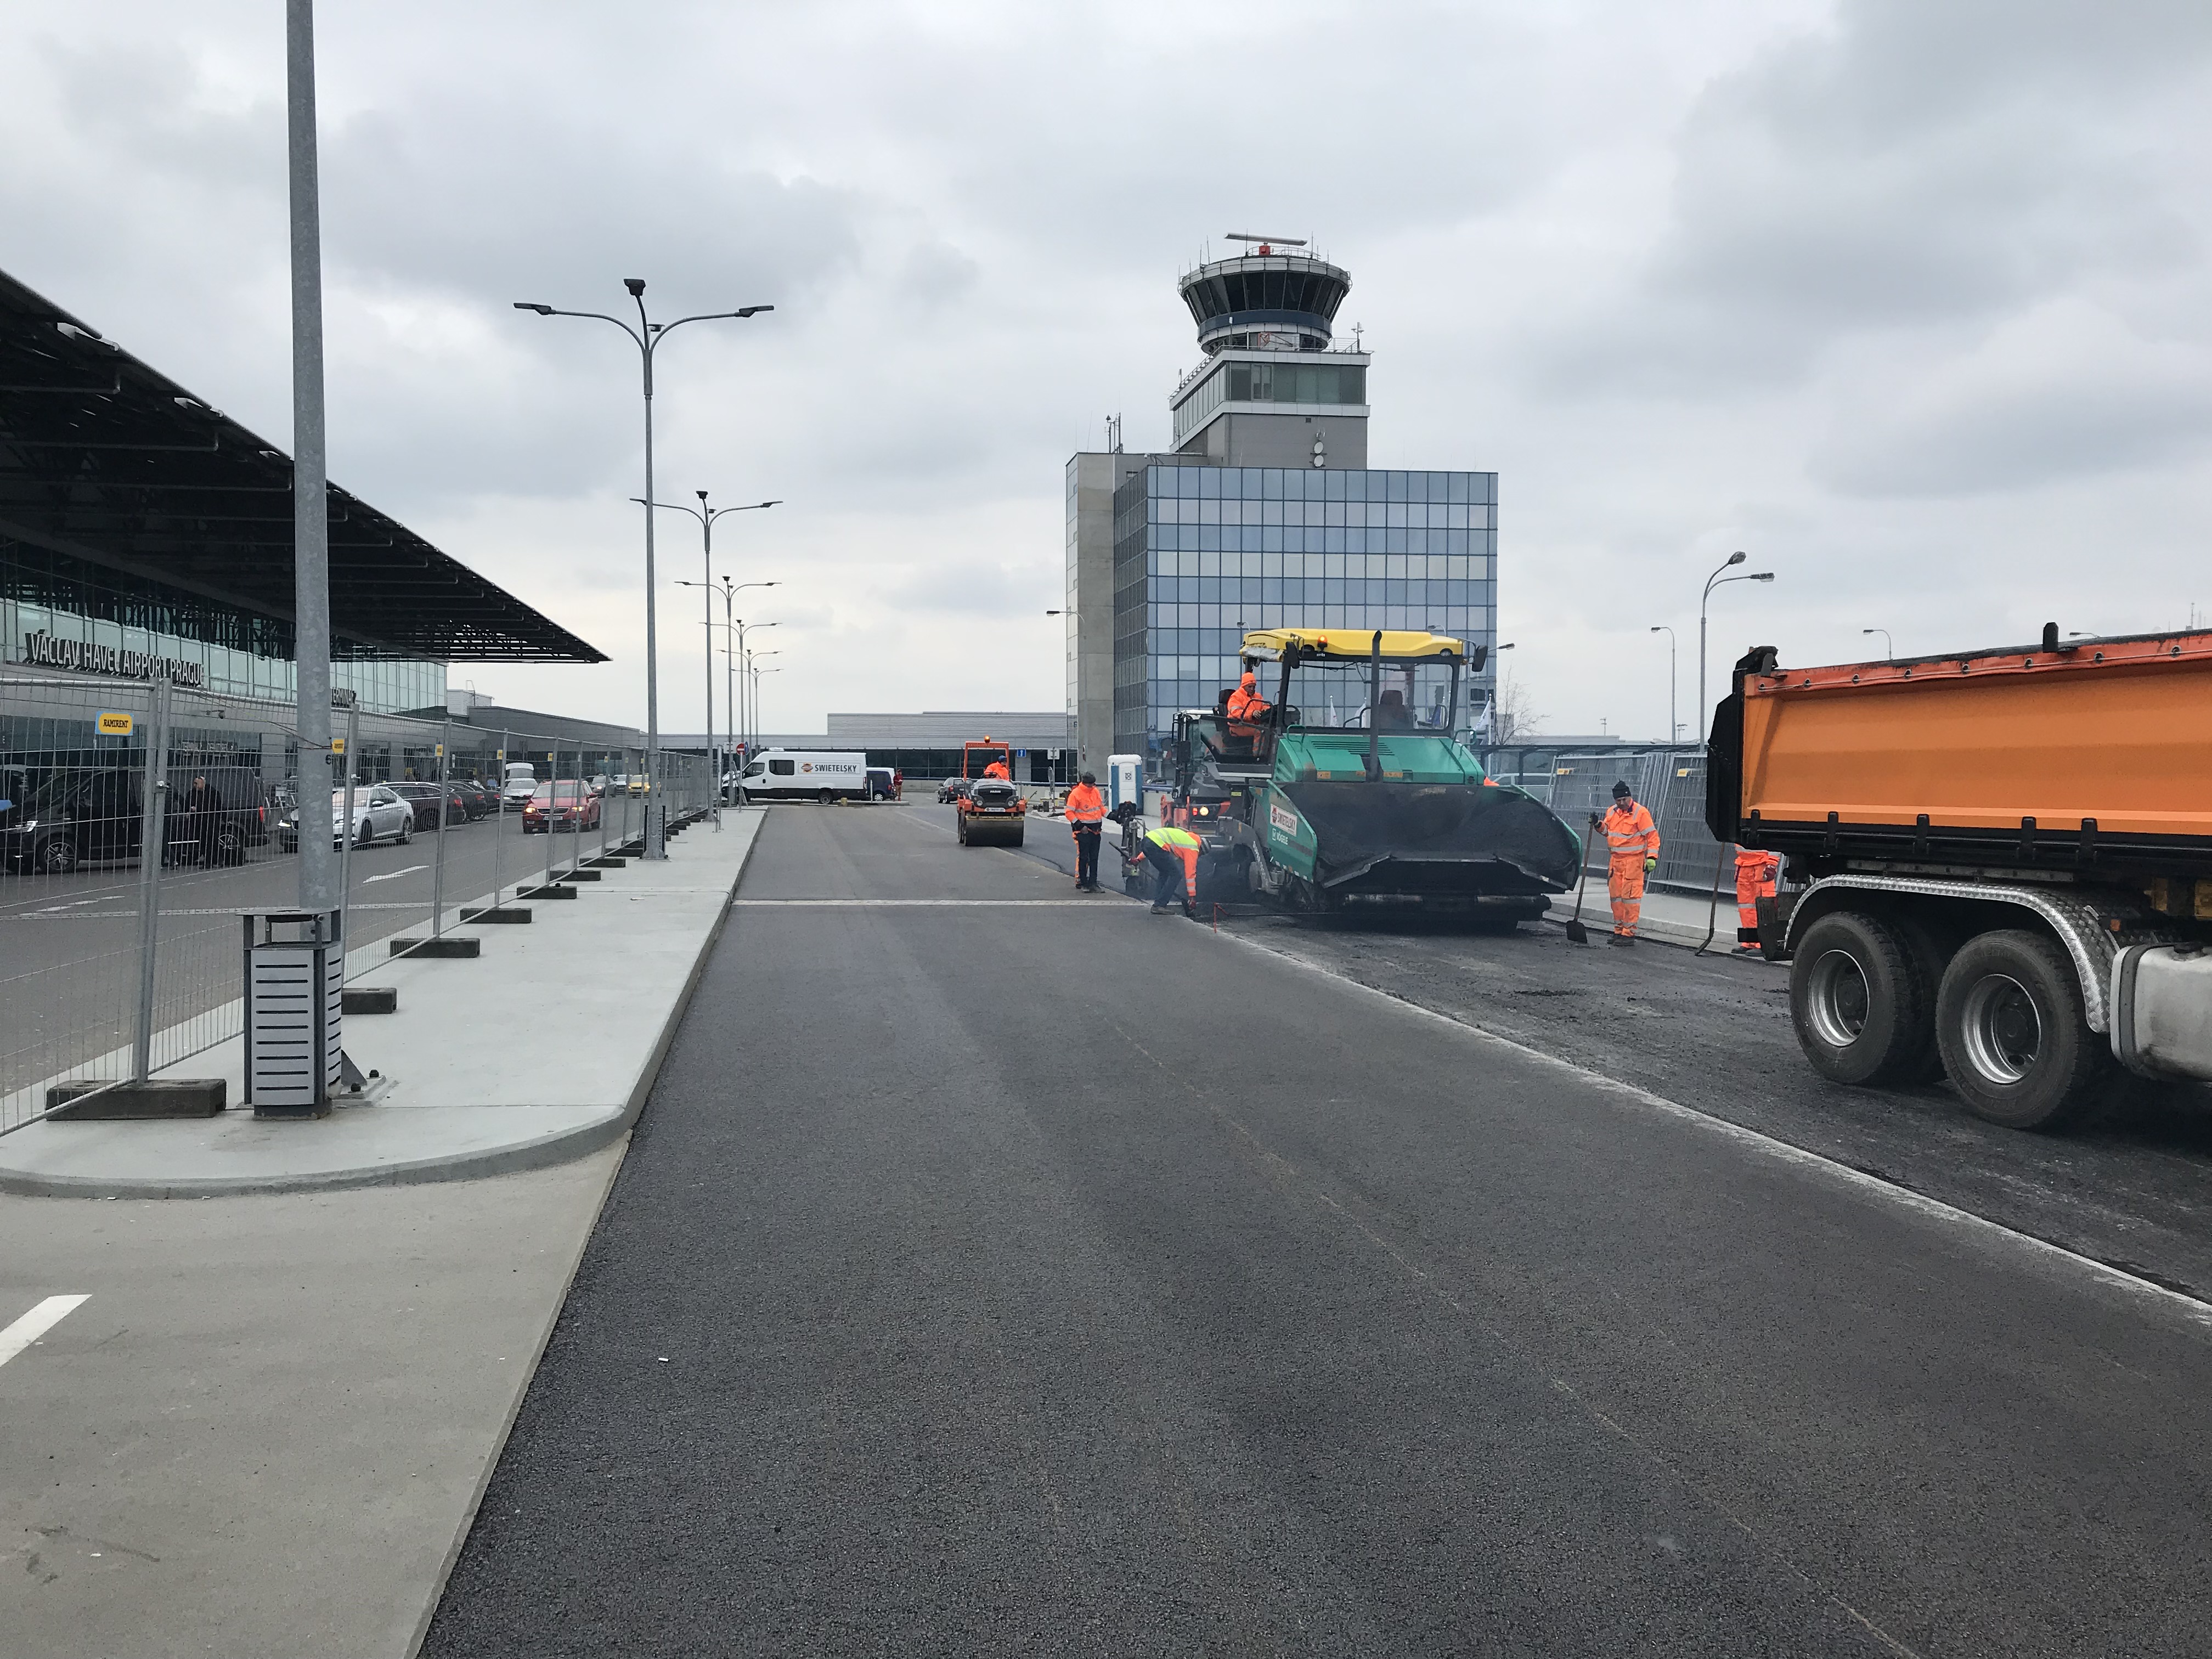 Letiště Václava Havla – příjezdová estakáda a plošina před T2 - Road and bridge construction